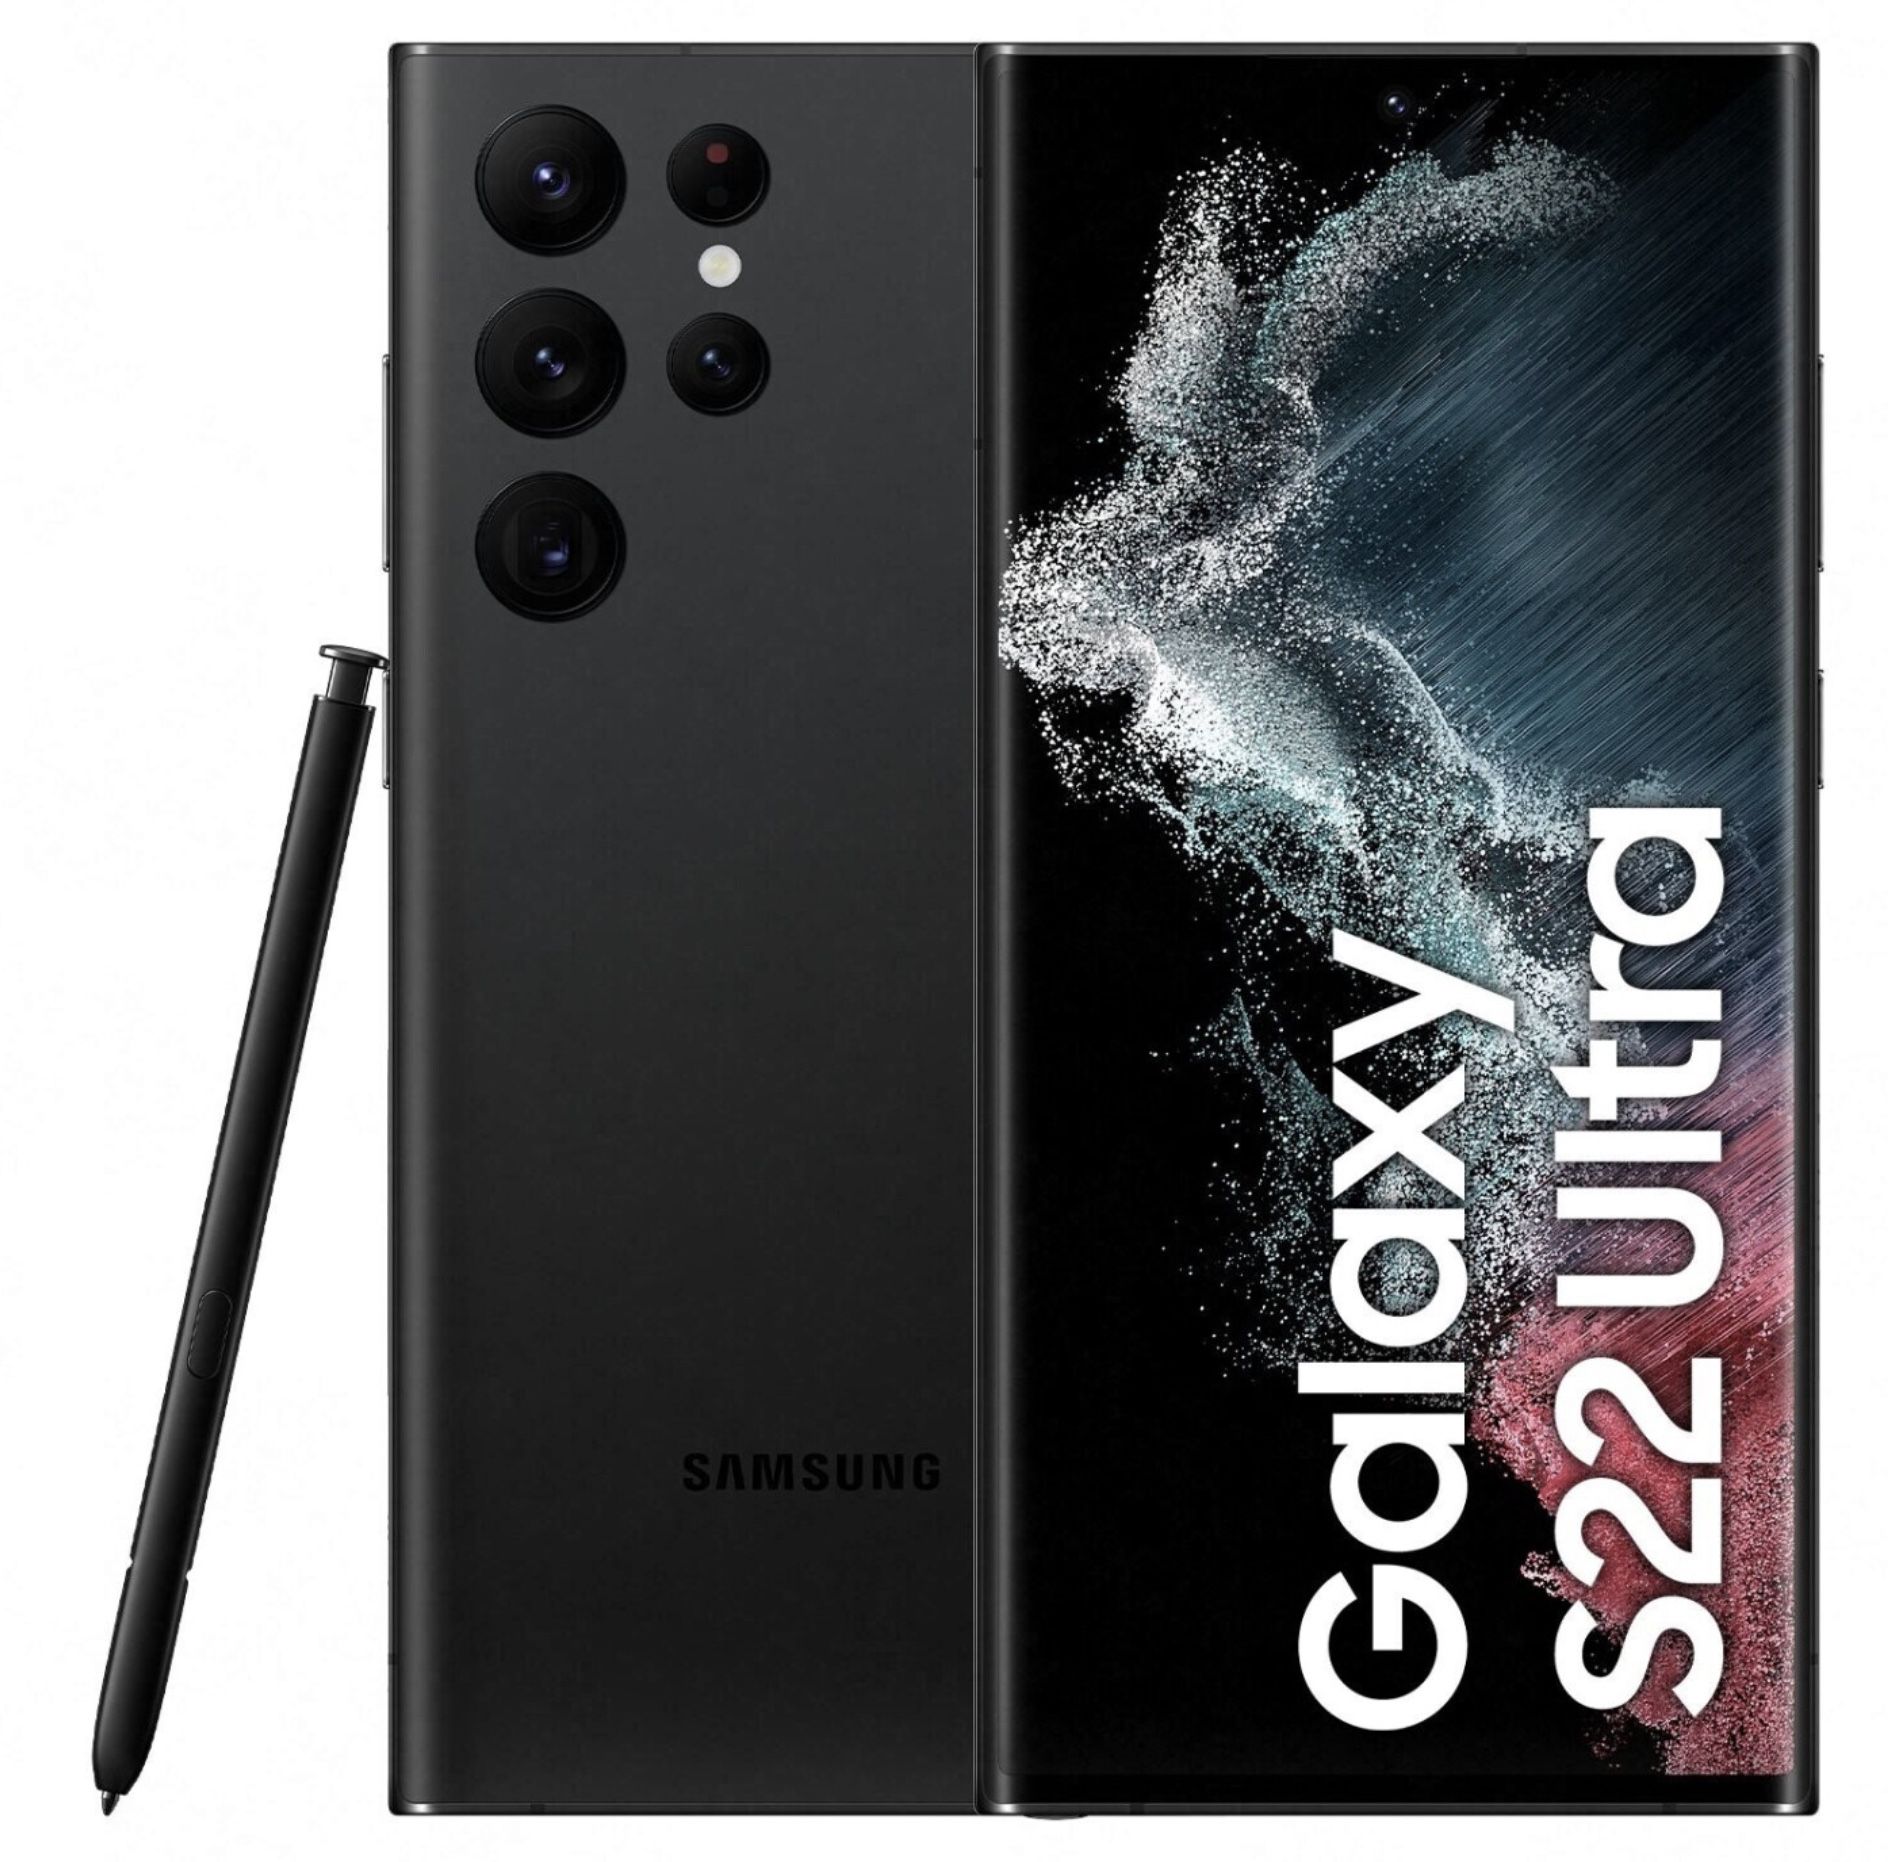 🔥 Samsung Galaxy S22 Ultra 5G mit 128GB + Galaxy Buds Pro für 49€ + o2 Allnet Flat mit unlimited LTE/5G für 59,99€ mtl.